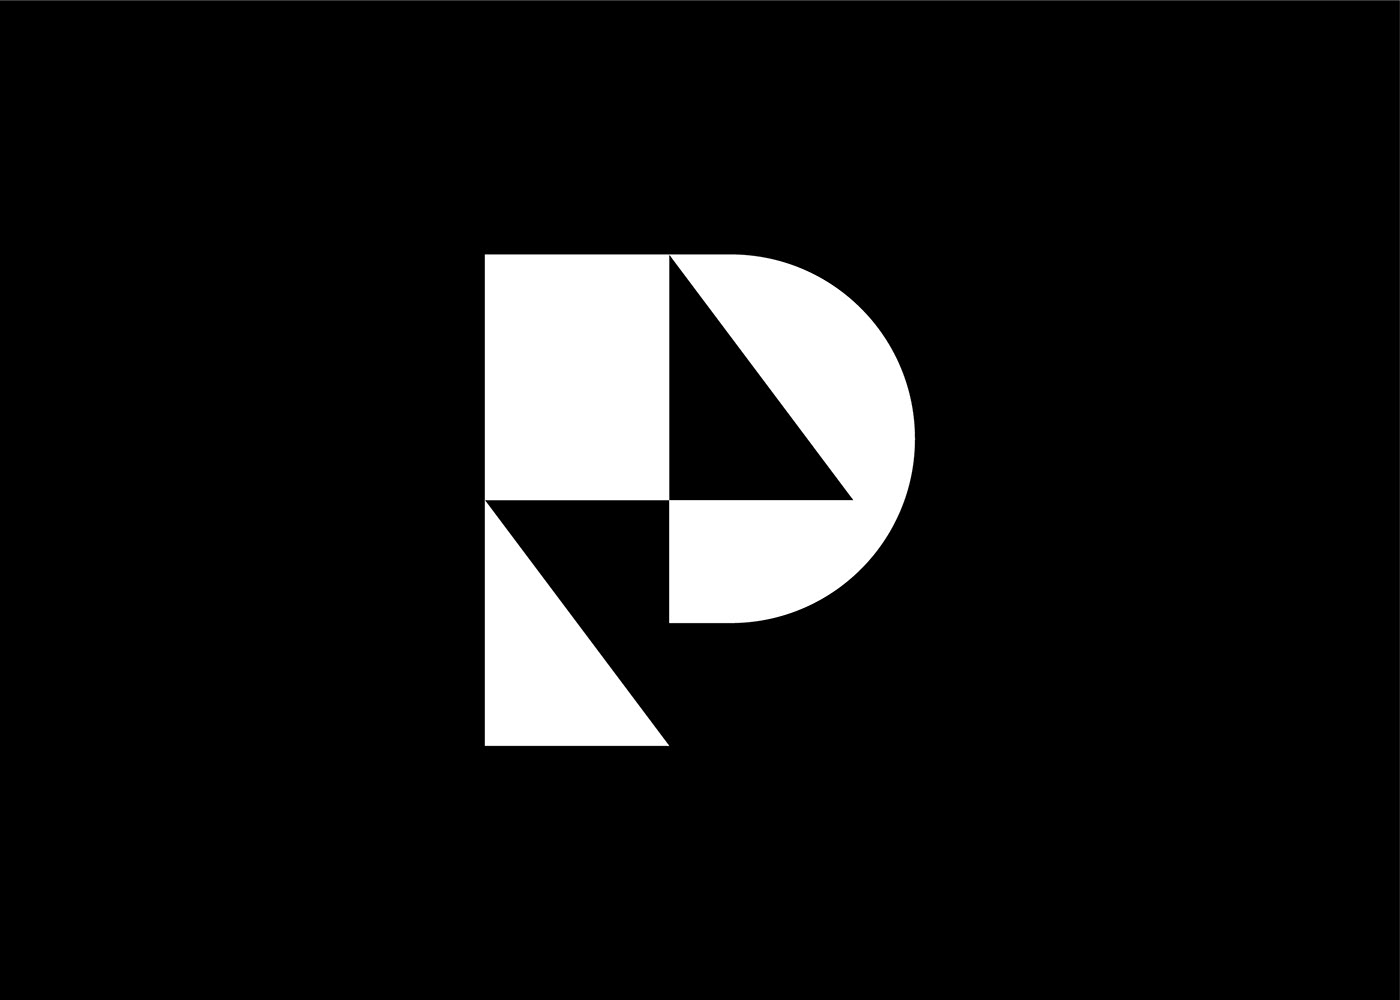 logo Logo Design lettermark P logo  letter p bolt negative space minimal logo brand identity branding 